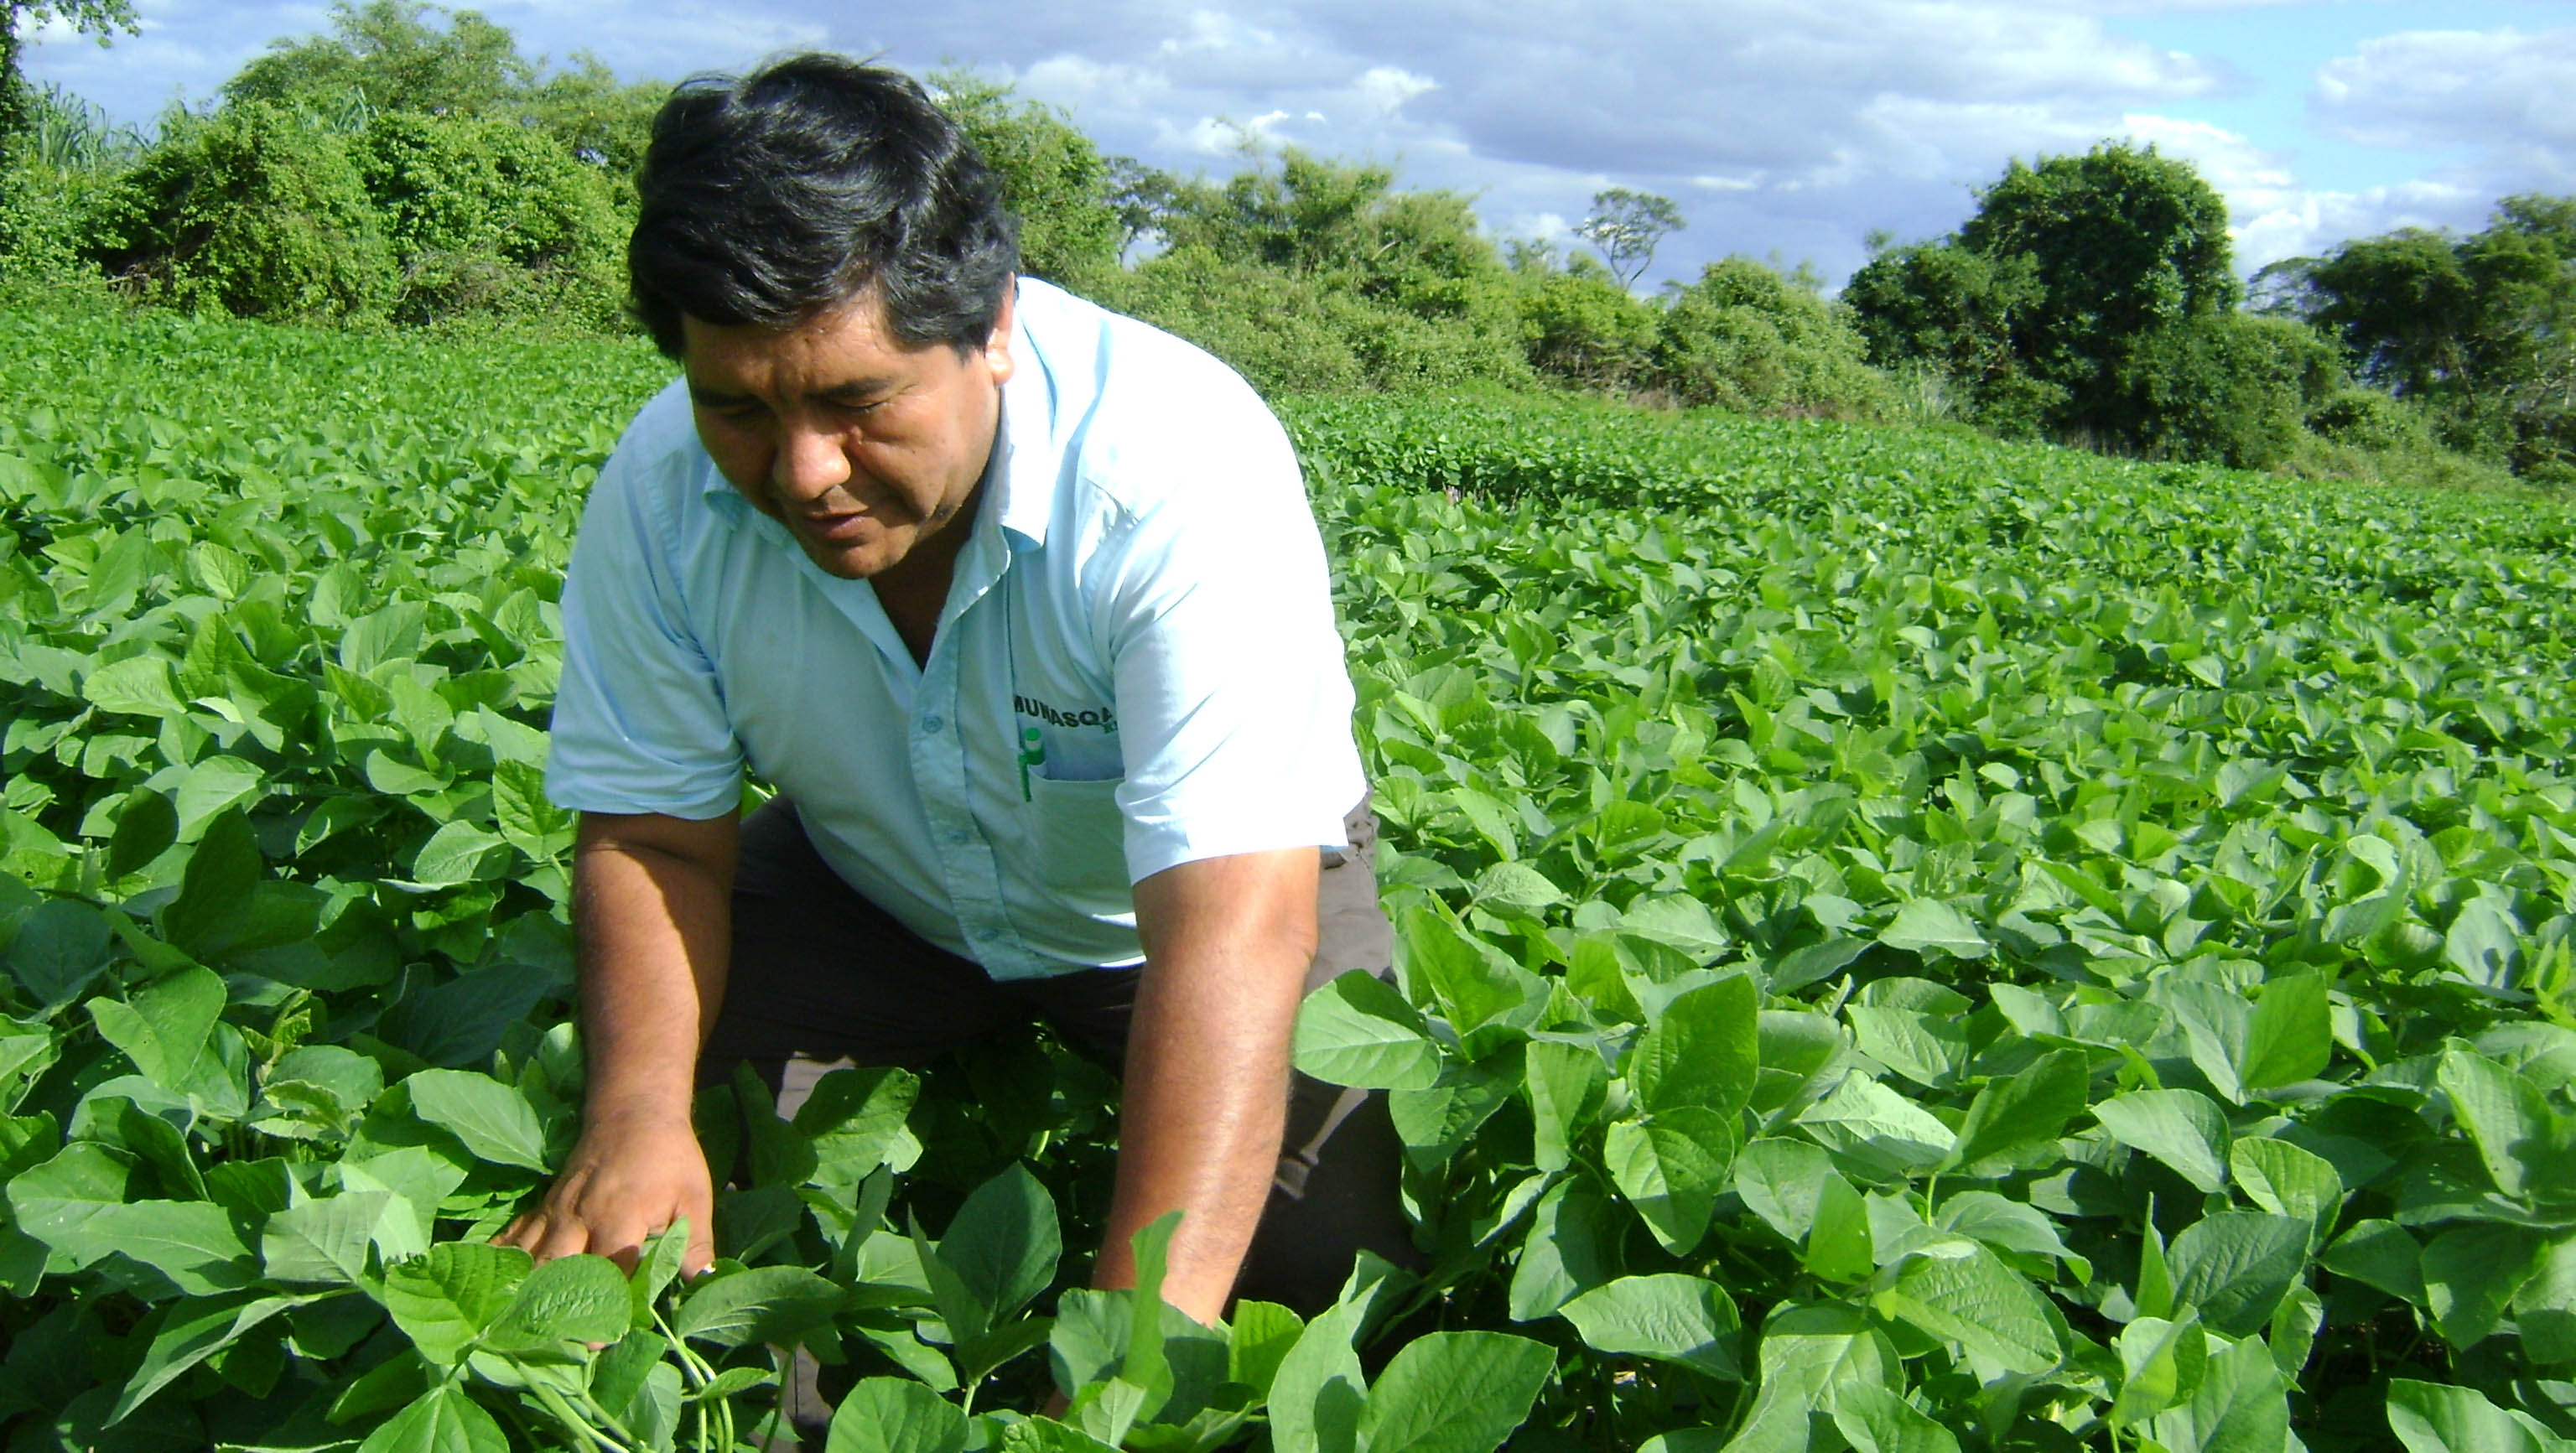 La nueva asignación de recursos busca incentivar la producción agrícola en las familias o pequeños productores. (Foto: boliviaagra.wordpress.com)